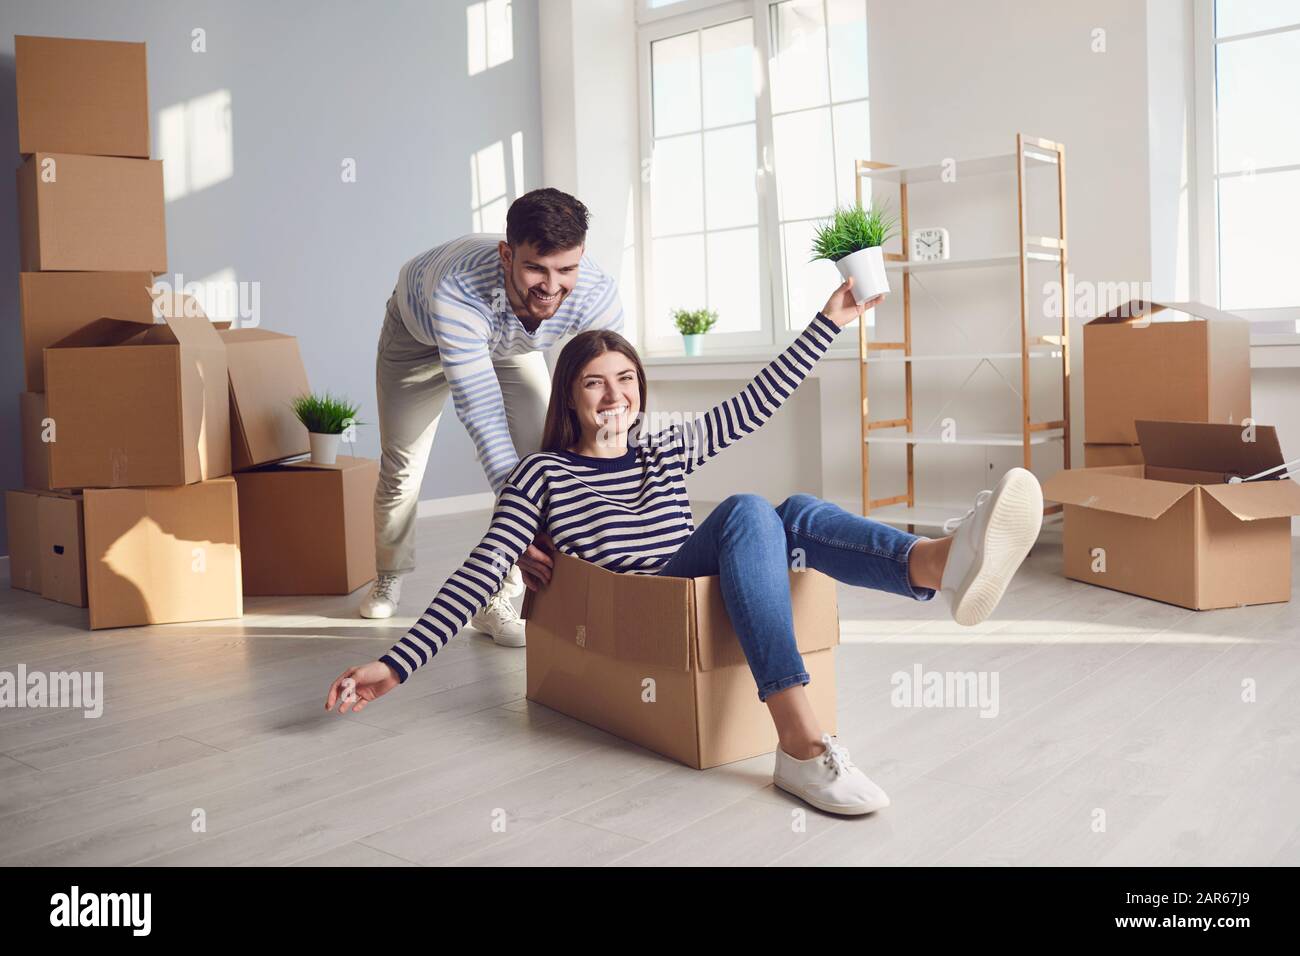 Ein fröhliches Paar spielt mit einem beweglichen Kasten in einem hellen Raum eines neuen Hauses. Stockfoto